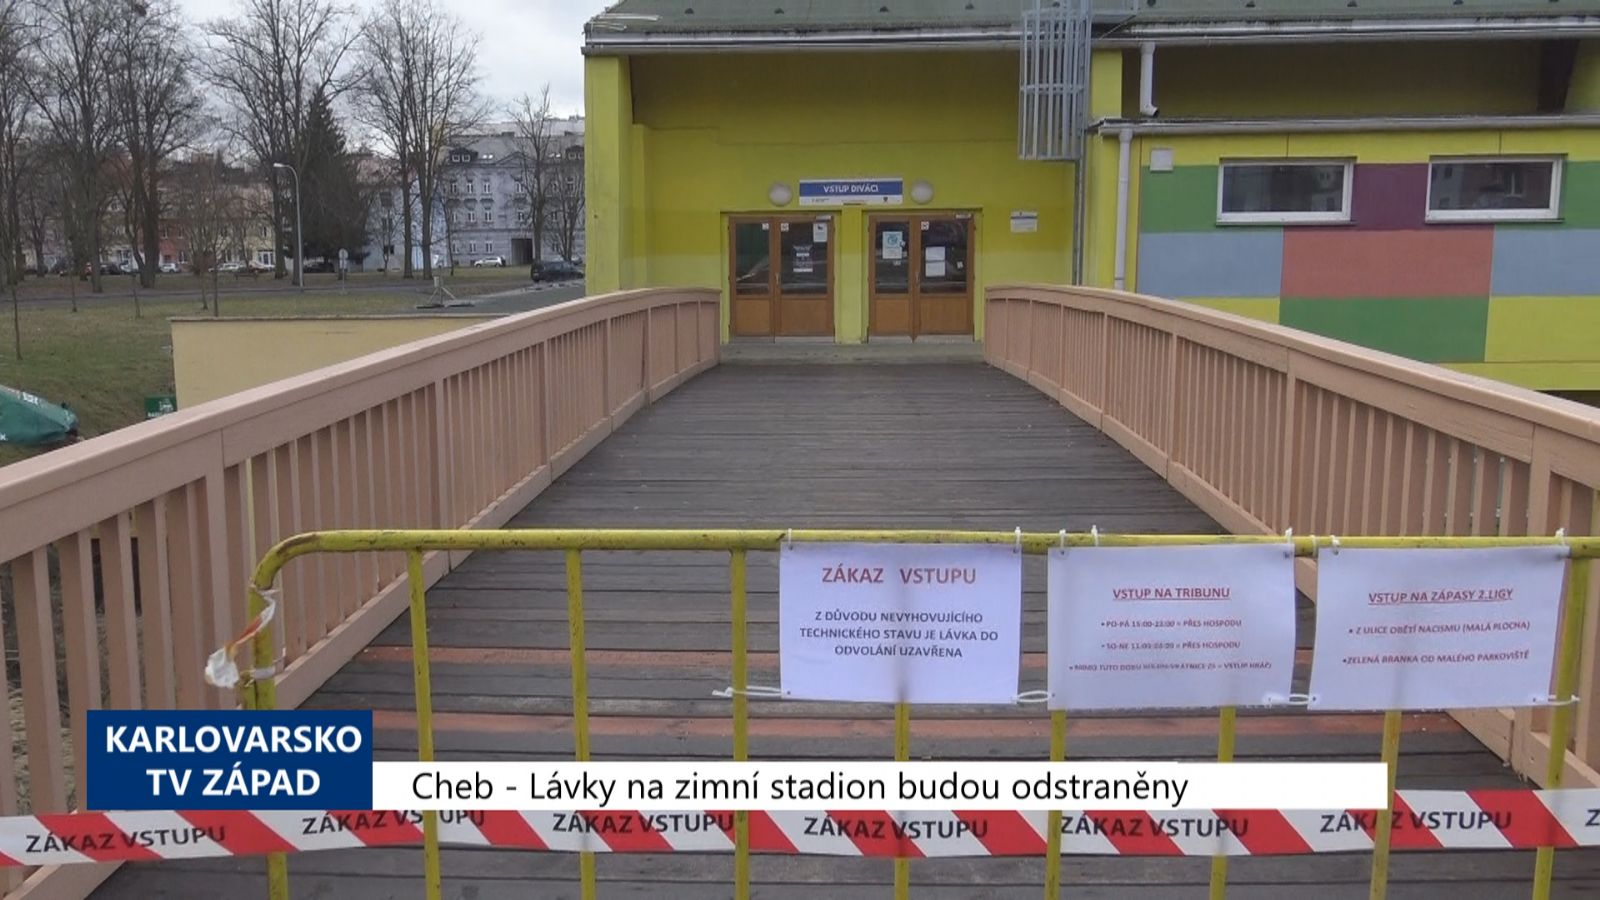 Cheb: Lávky na zimní stadion budou odstraněny (TV Západ)